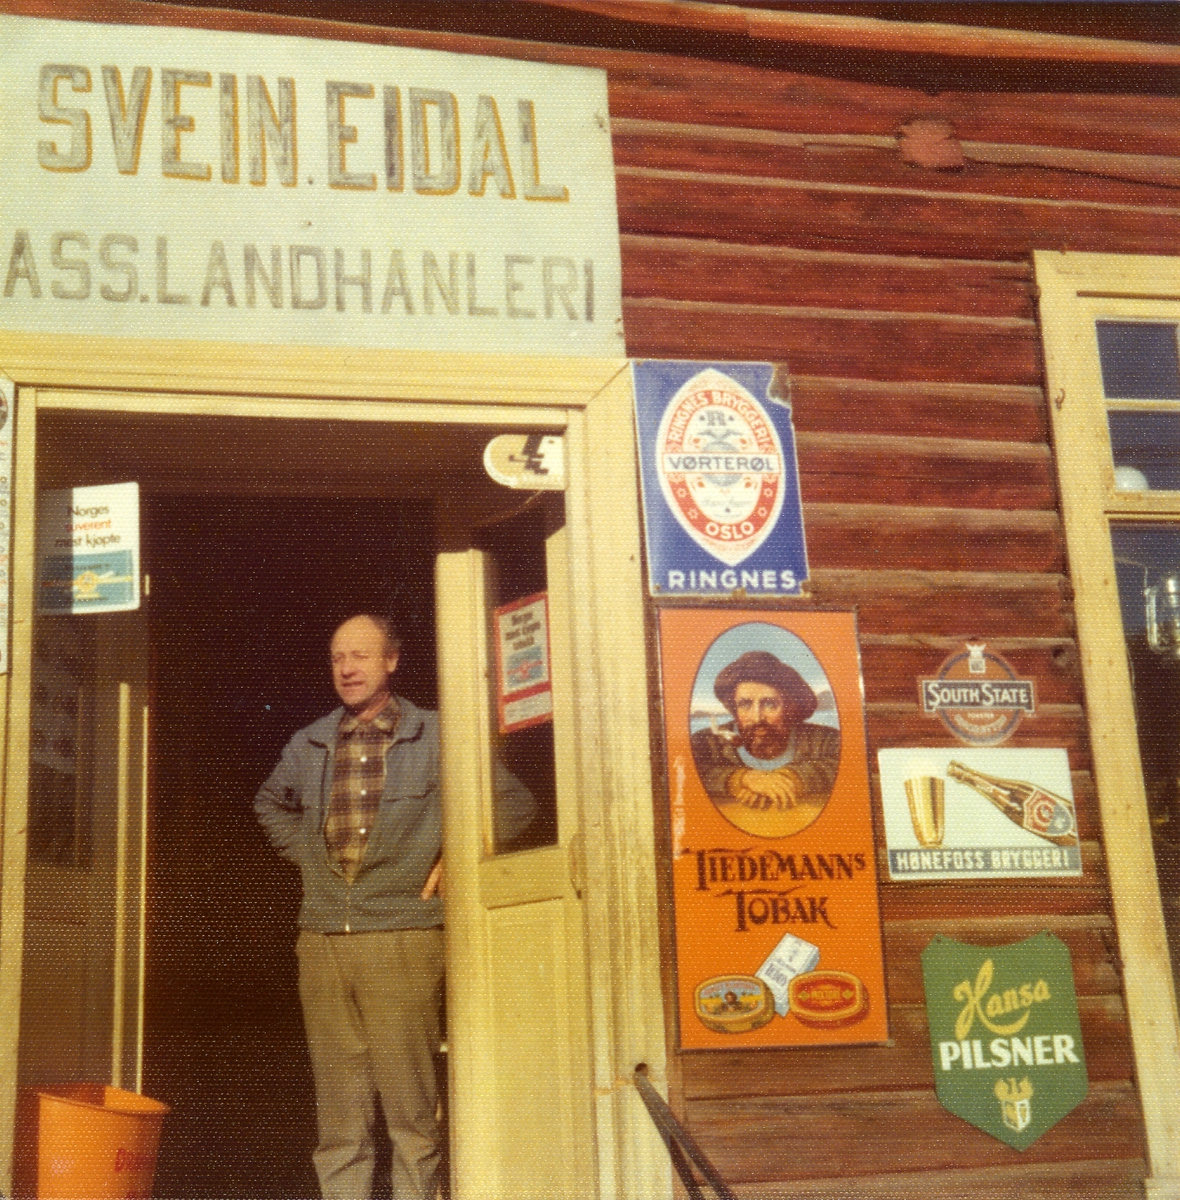 Gamle reklameskilt på fasaden til landhandel Svein Eidal.